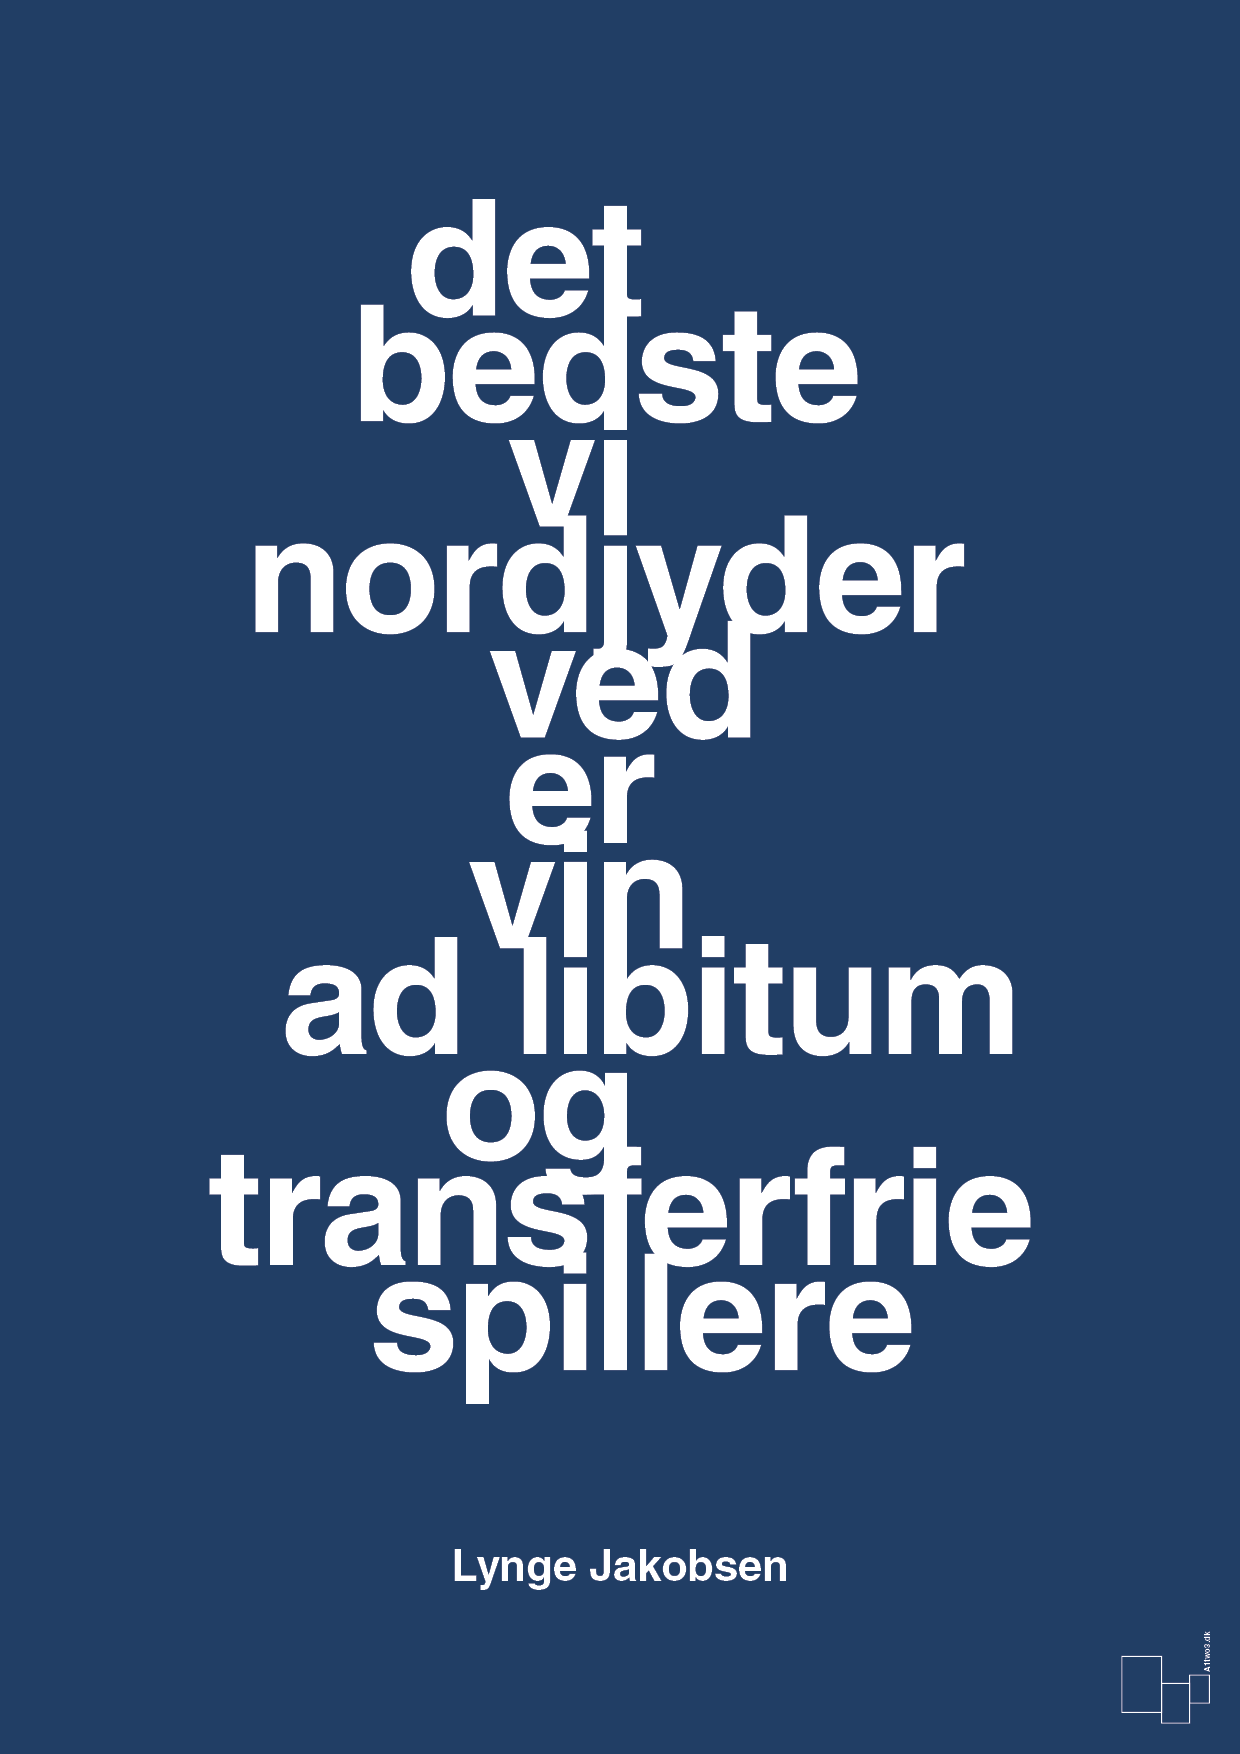 det bedste vi nordjyder ved er vin ad libitum og transferfrie spillere - Plakat med Citater i Lapis Blue